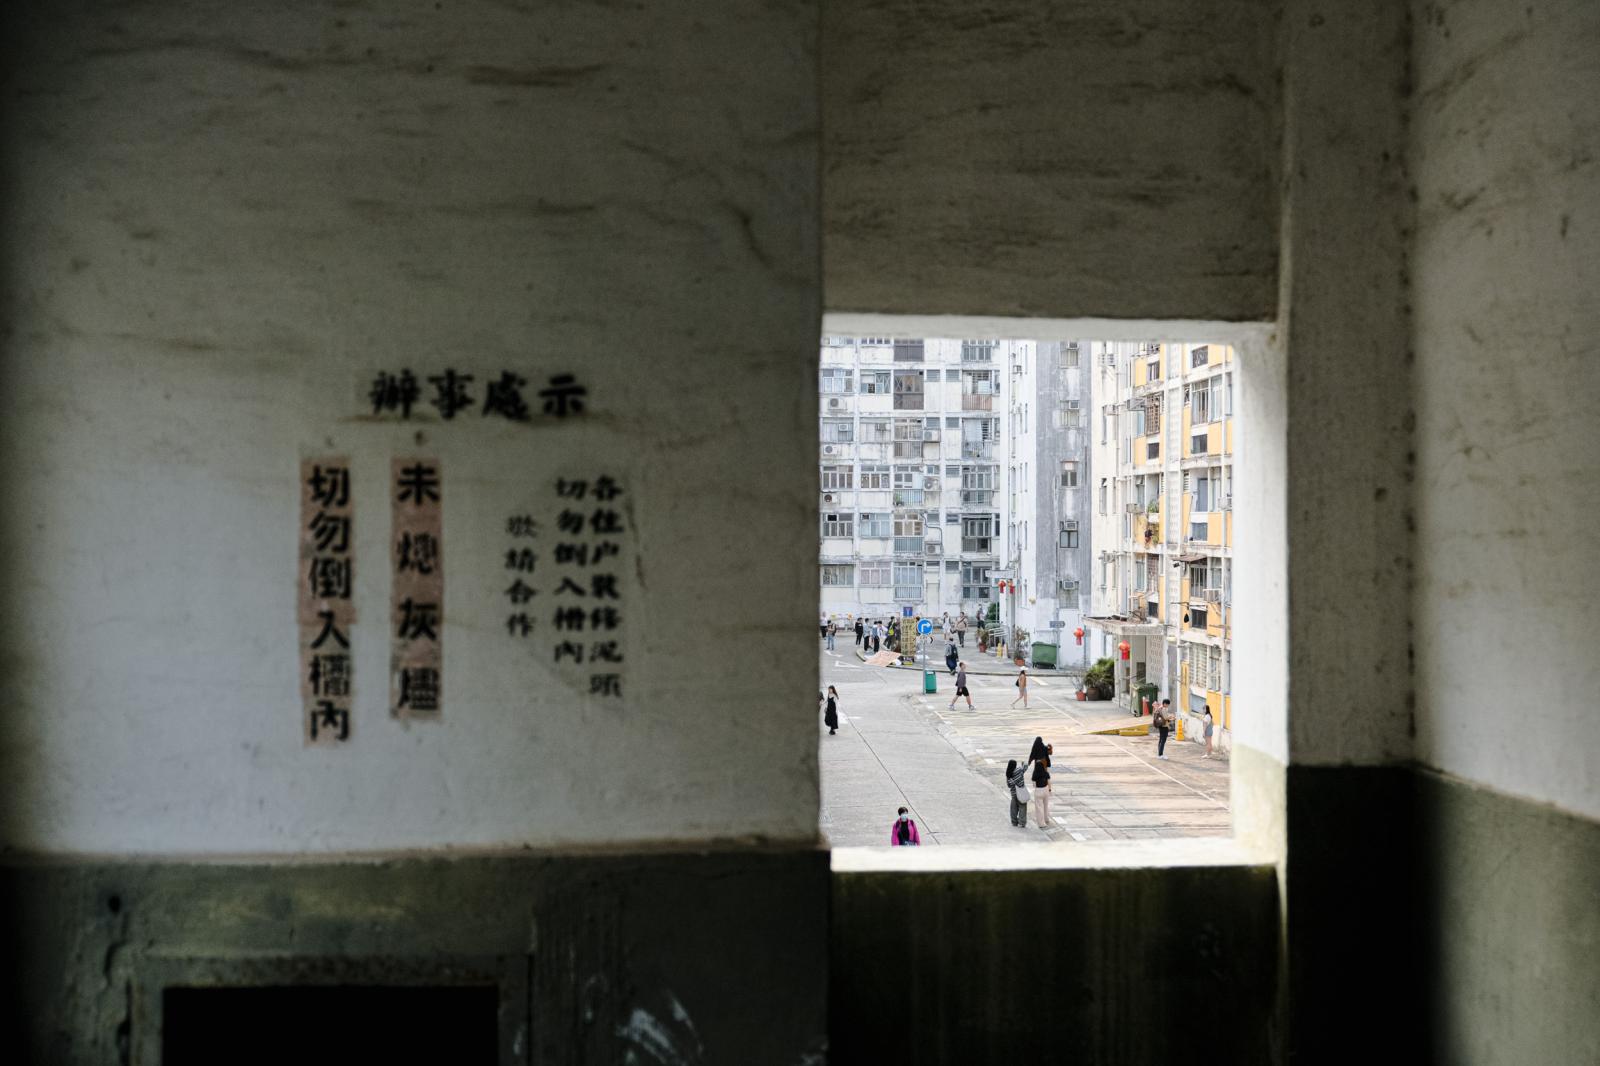 Demolition of Tai Hang Sai